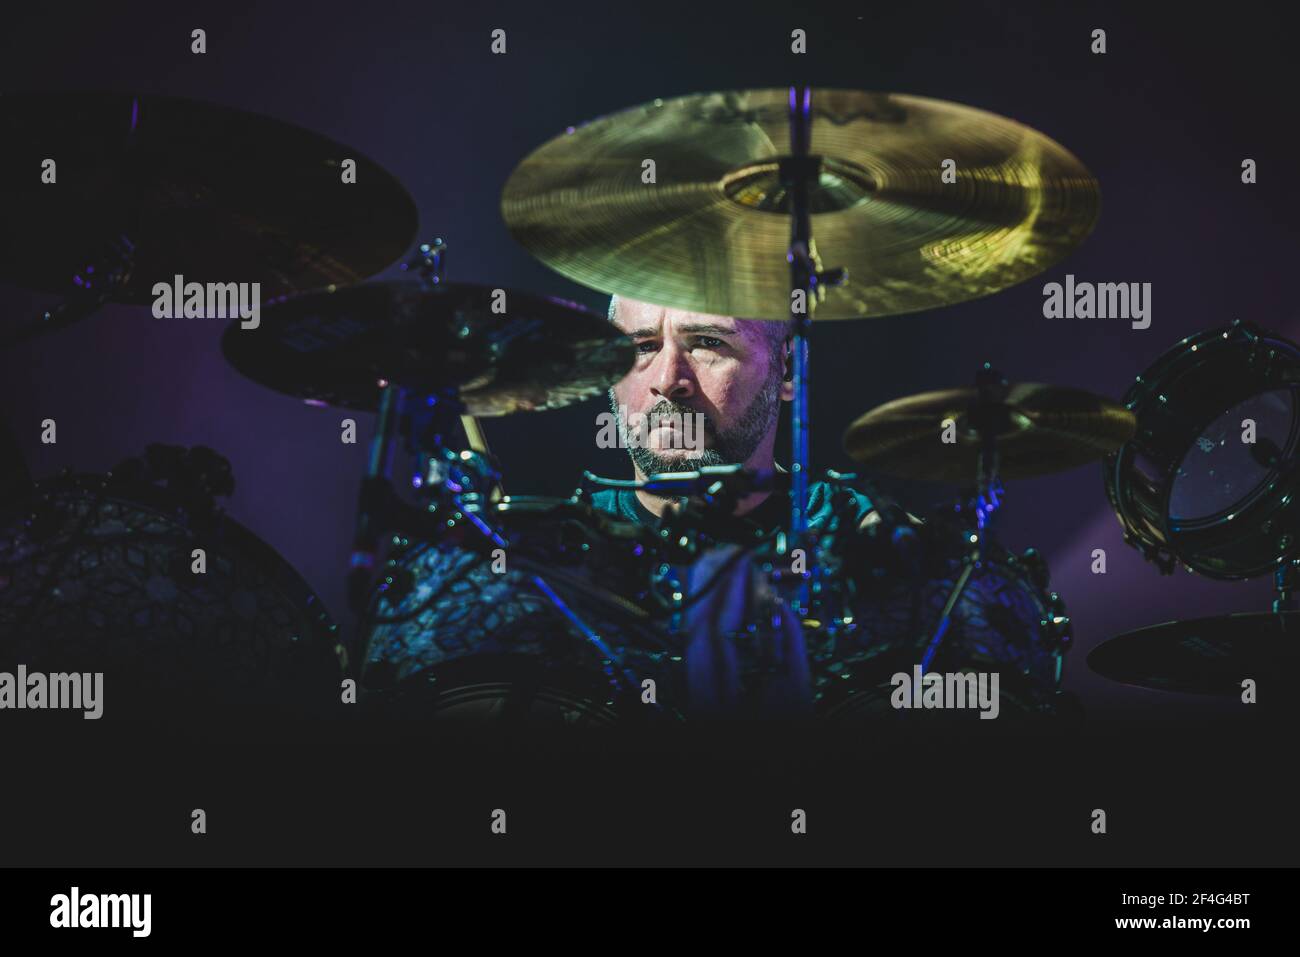 ITALIEN, FIRENZE 2017: John Dolmahan, Schlagzeuger der amerikanischen vierköpfigen Rockband "System of A Down" (auch bekannt als SOAD), tritt live auf der Bühne auf. Stockfoto